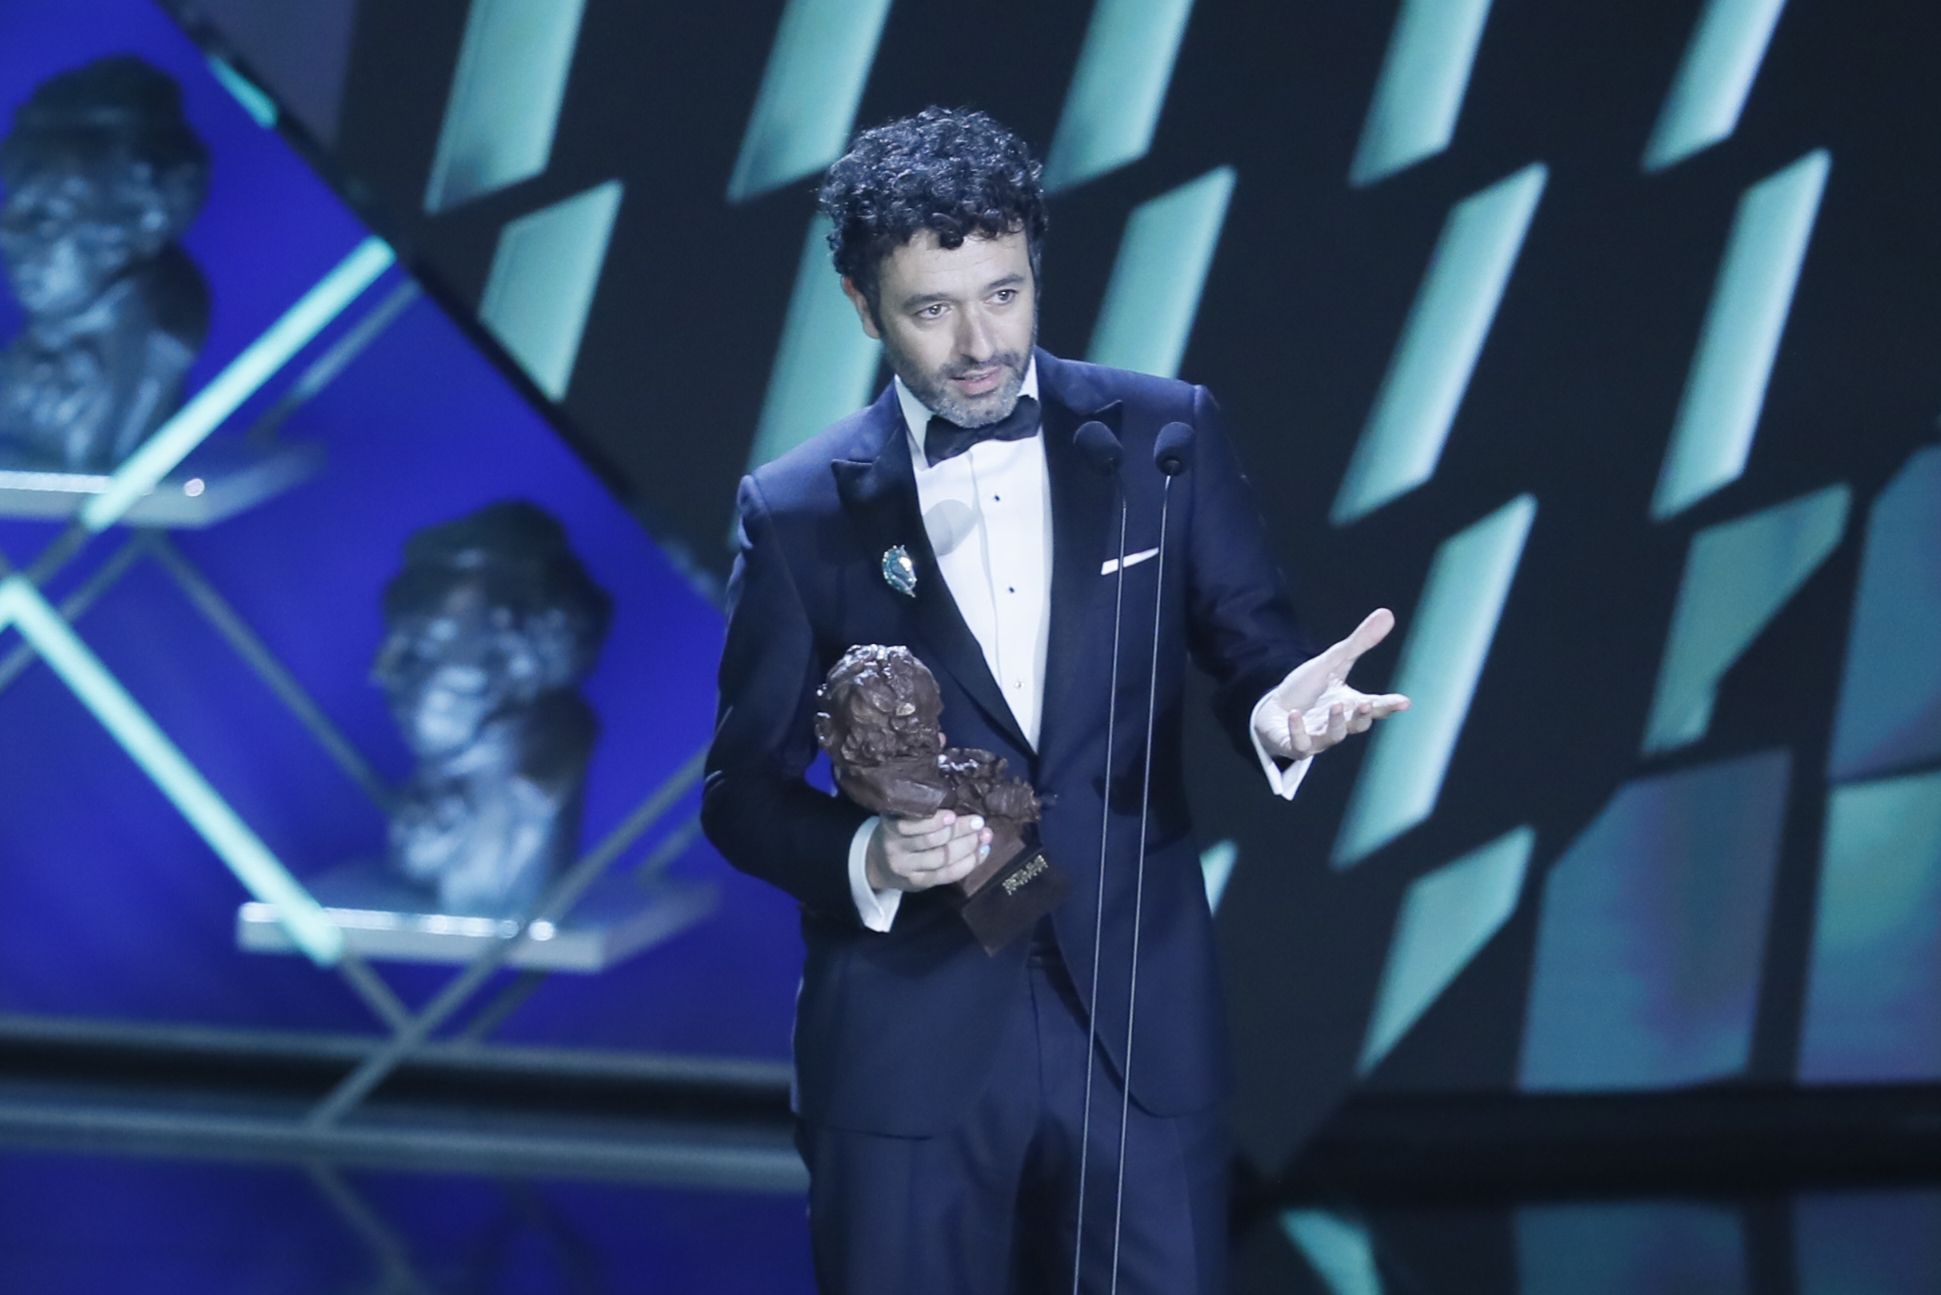 Premios Goya: el cine español premia lo mejor de su año